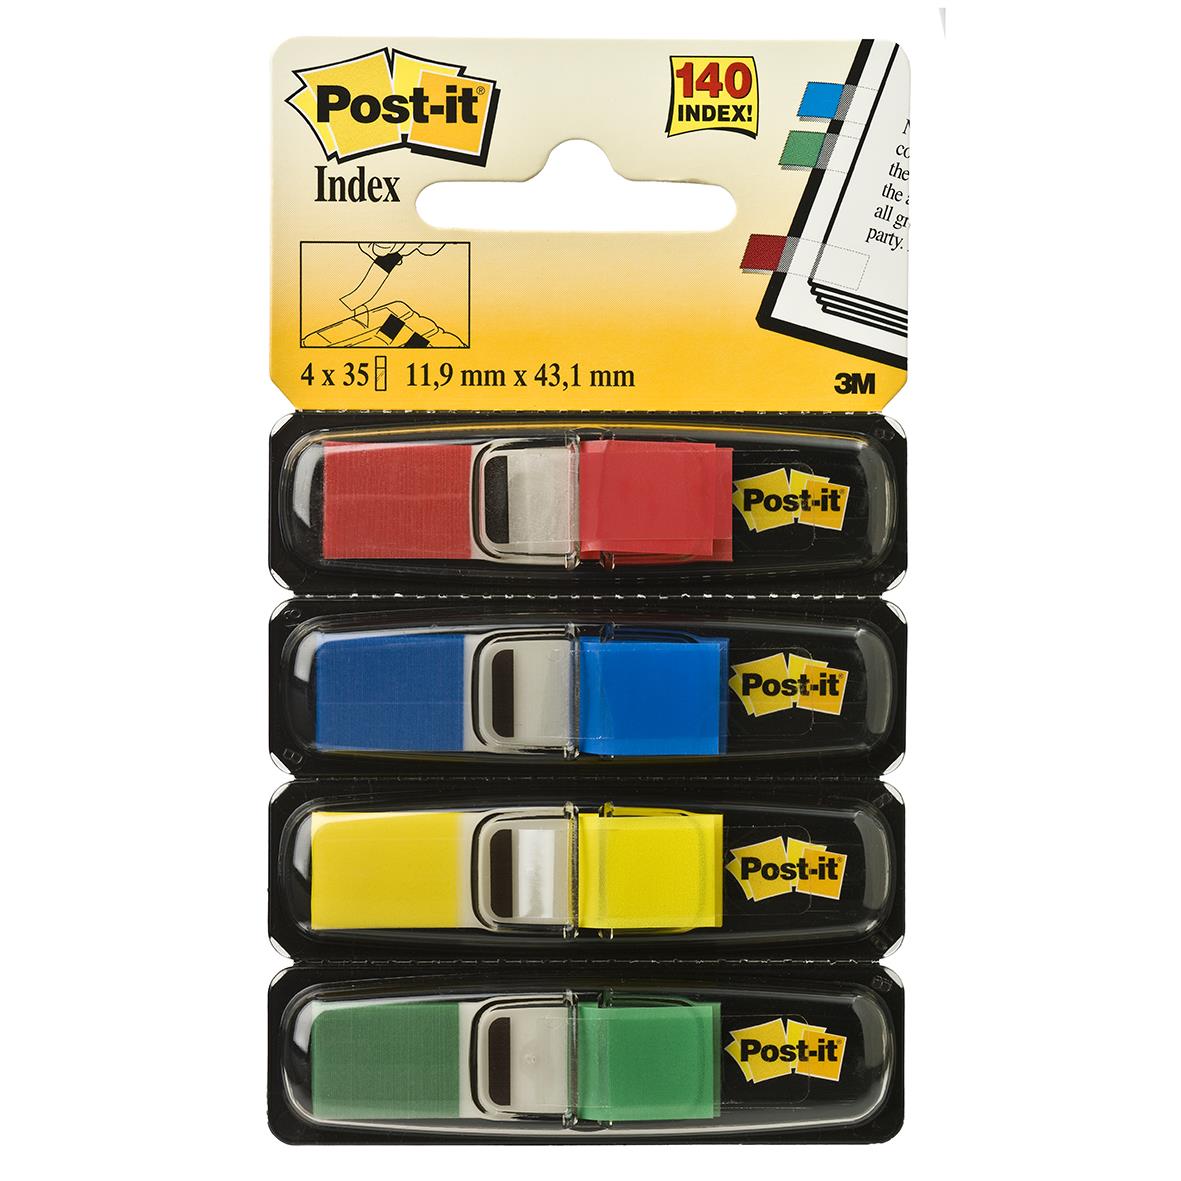 Märkflik Post-it Index Smala 11,9mm x 43,1mm